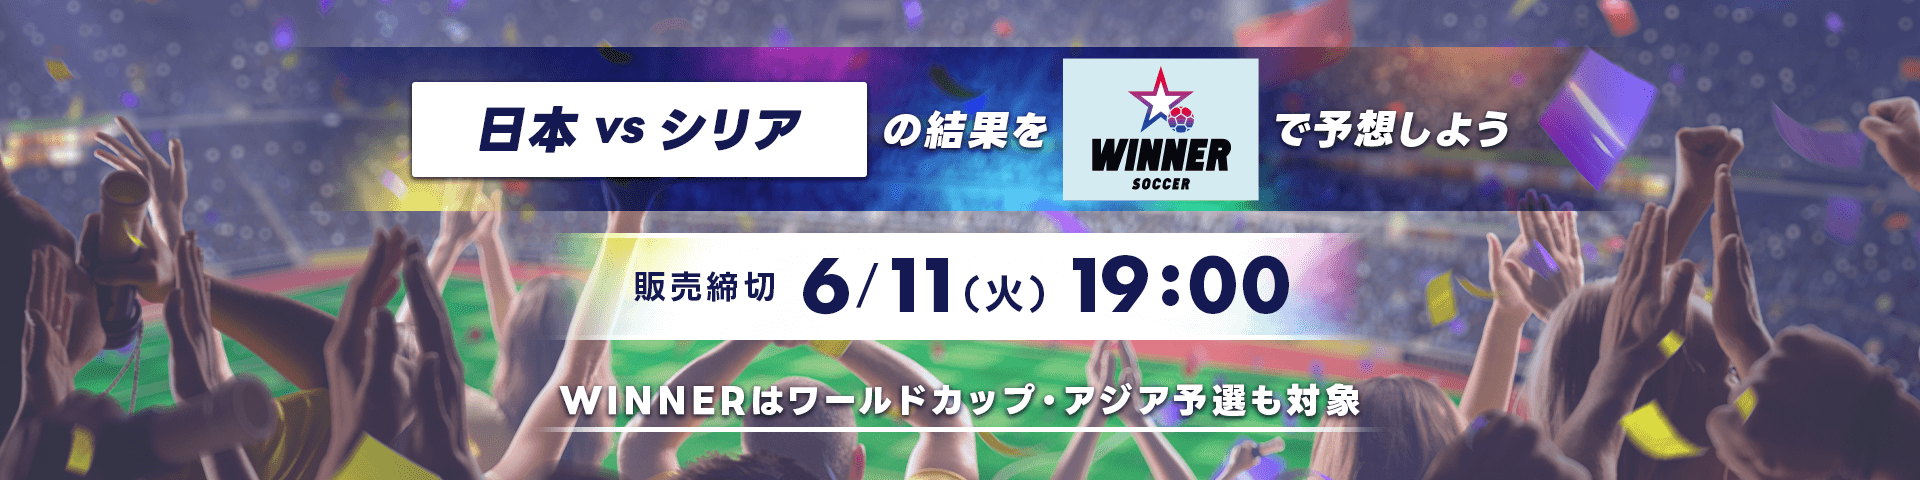 日本 vs シリアの結果をWINNERで予想しよう 販売締め切り 6月11日 火曜日 19時。 WINNERはワールドカップ・アジア予選も対象